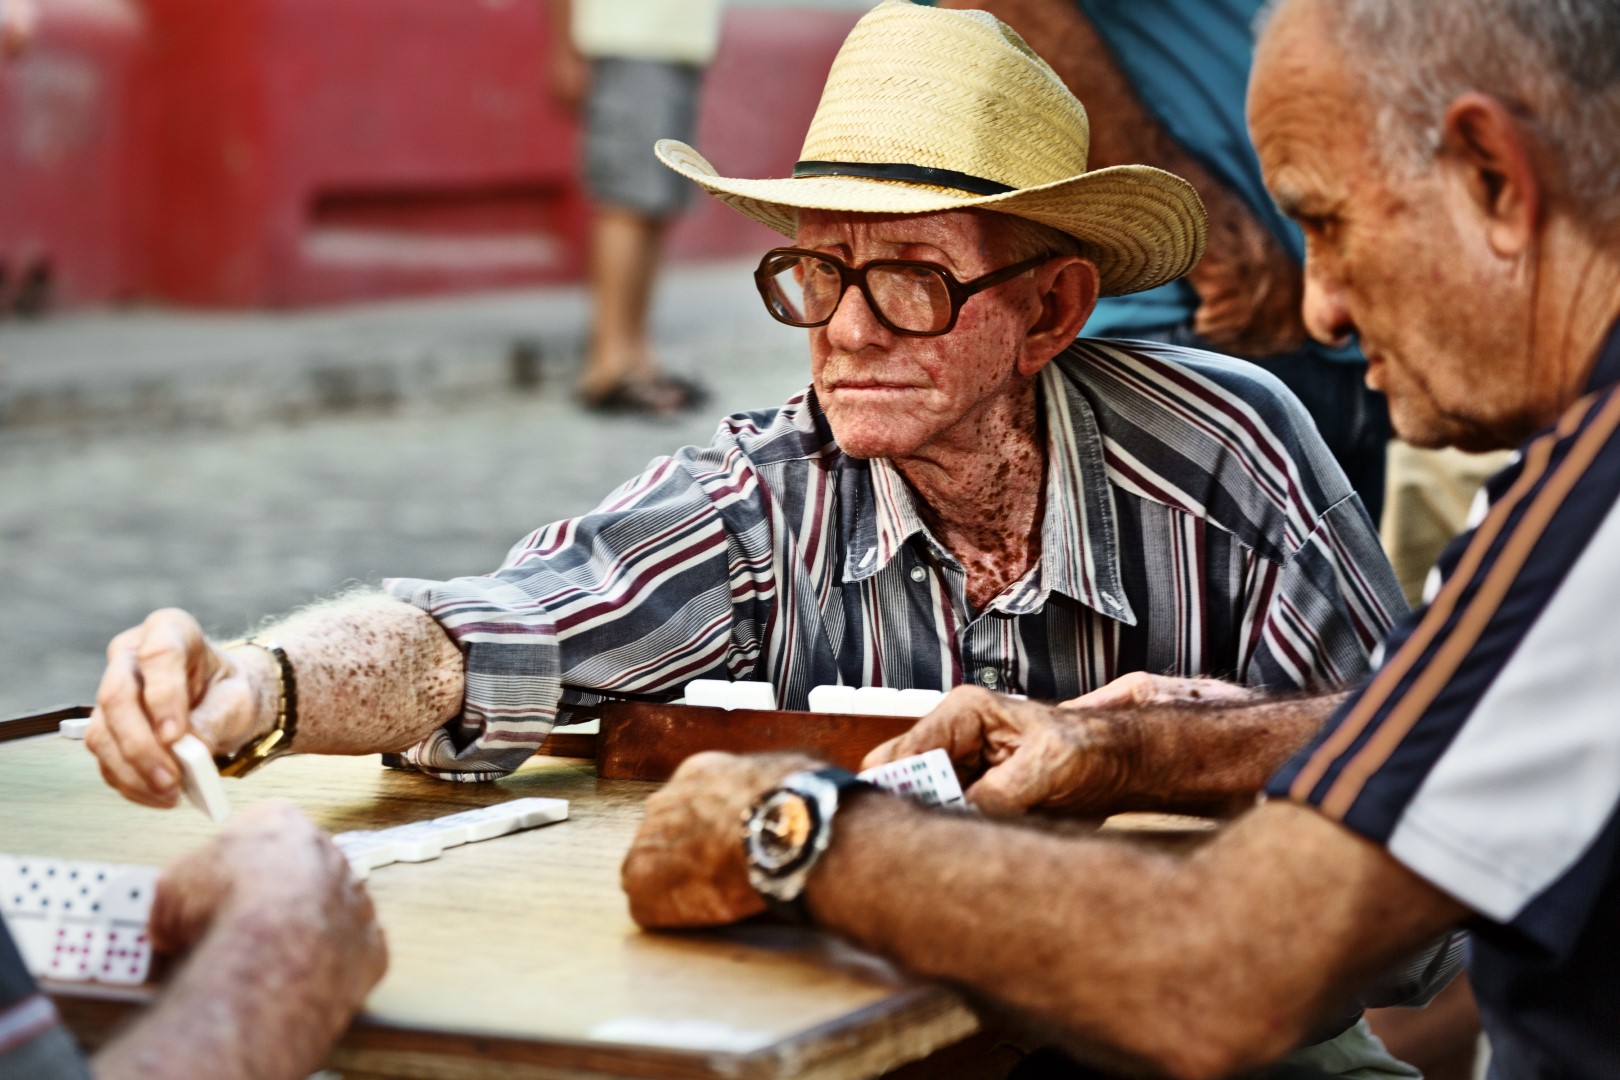 Old men playing dominos in Trinidad, Cuba